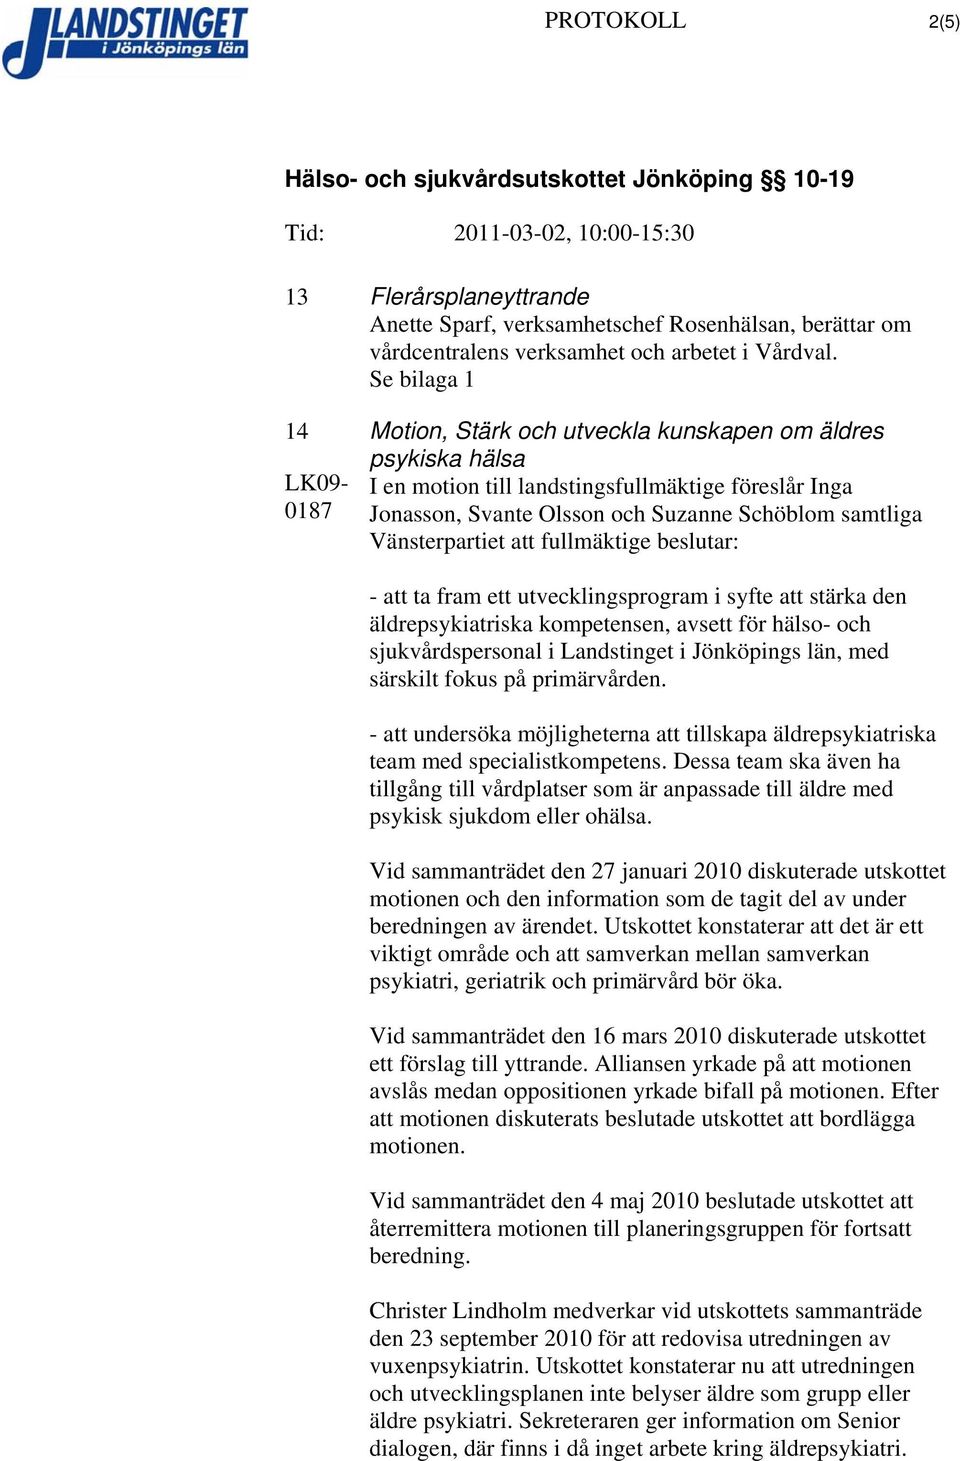 Vänsterpartiet att fullmäktige beslutar: - att ta fram ett utvecklingsprogram i syfte att stärka den äldrepsykiatriska kompetensen, avsett för hälso- och sjukvårdspersonal i Landstinget i Jönköpings